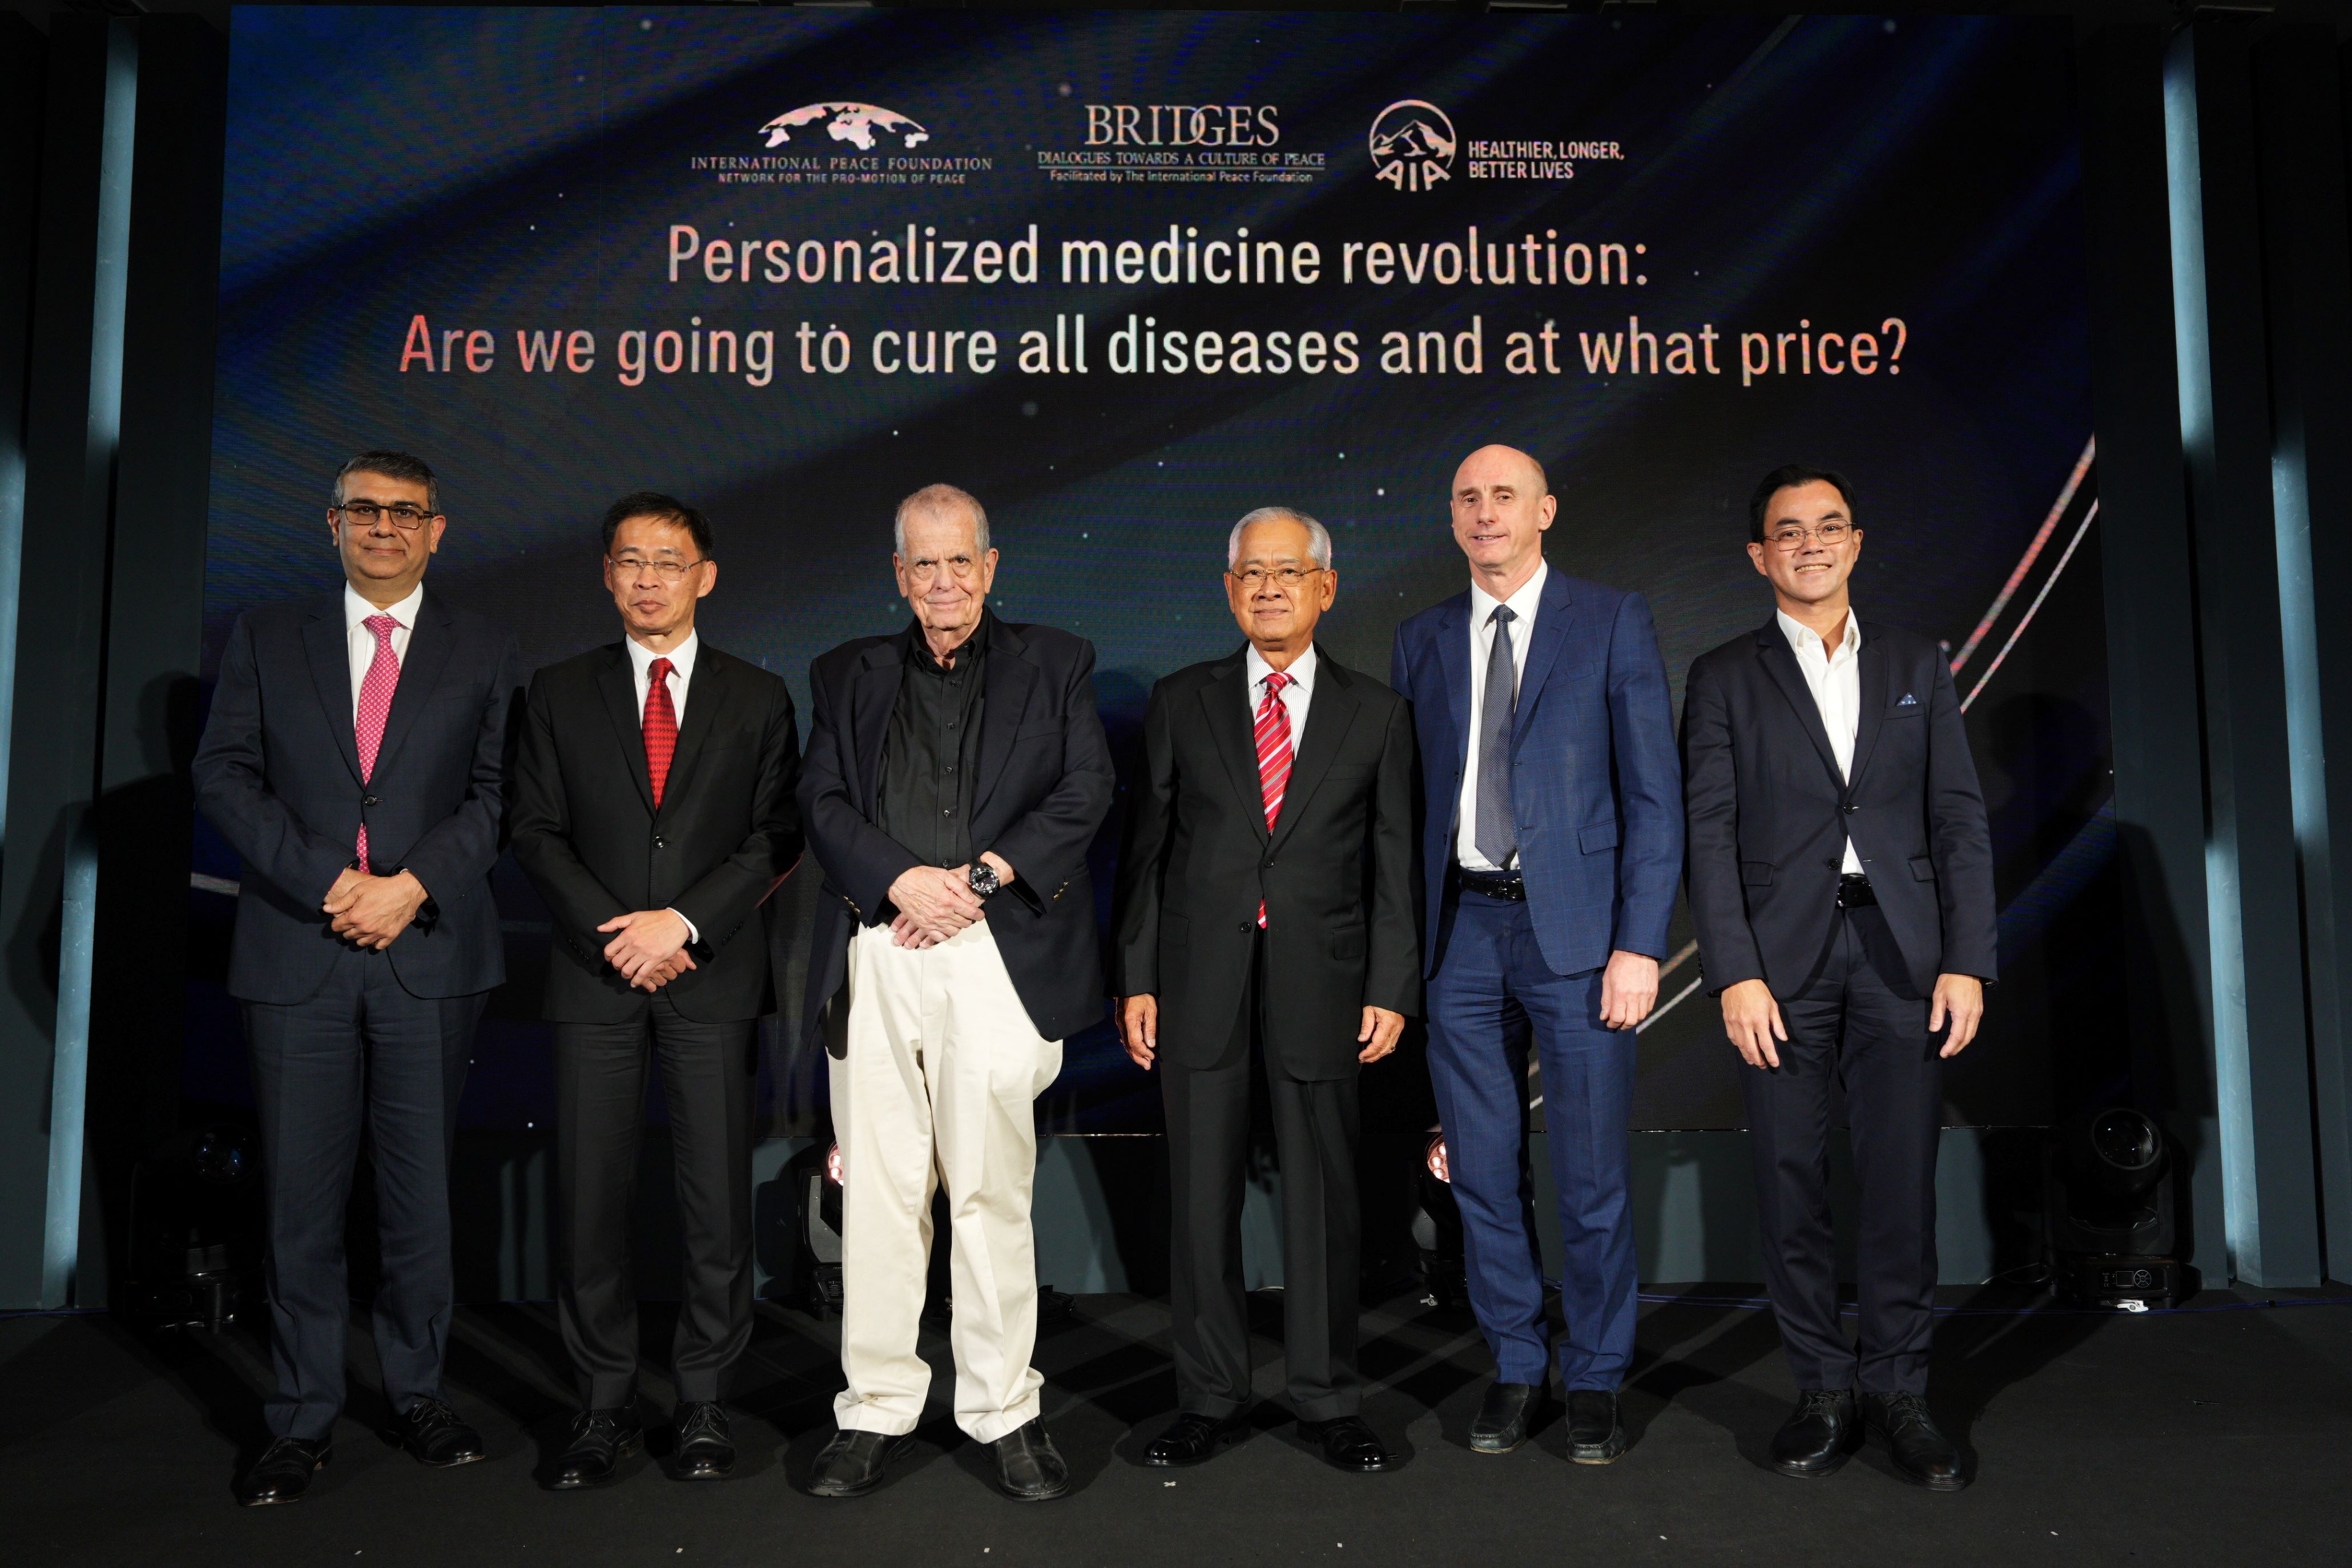 เอไอเอ ประเทศไทย จัดงาน AIA Nobel Laureates Luncheon Talk Series ในหัวข้อ “Personalized Medicine Revolution: Are We Going to Cure All Diseases and at What Price?”โดย ศาสตราจารย์อารอน ชีชาโนเวอร์ นักวิทยาศาสตร์รางวัลโนเบลสาขาเคมี ปี 2547